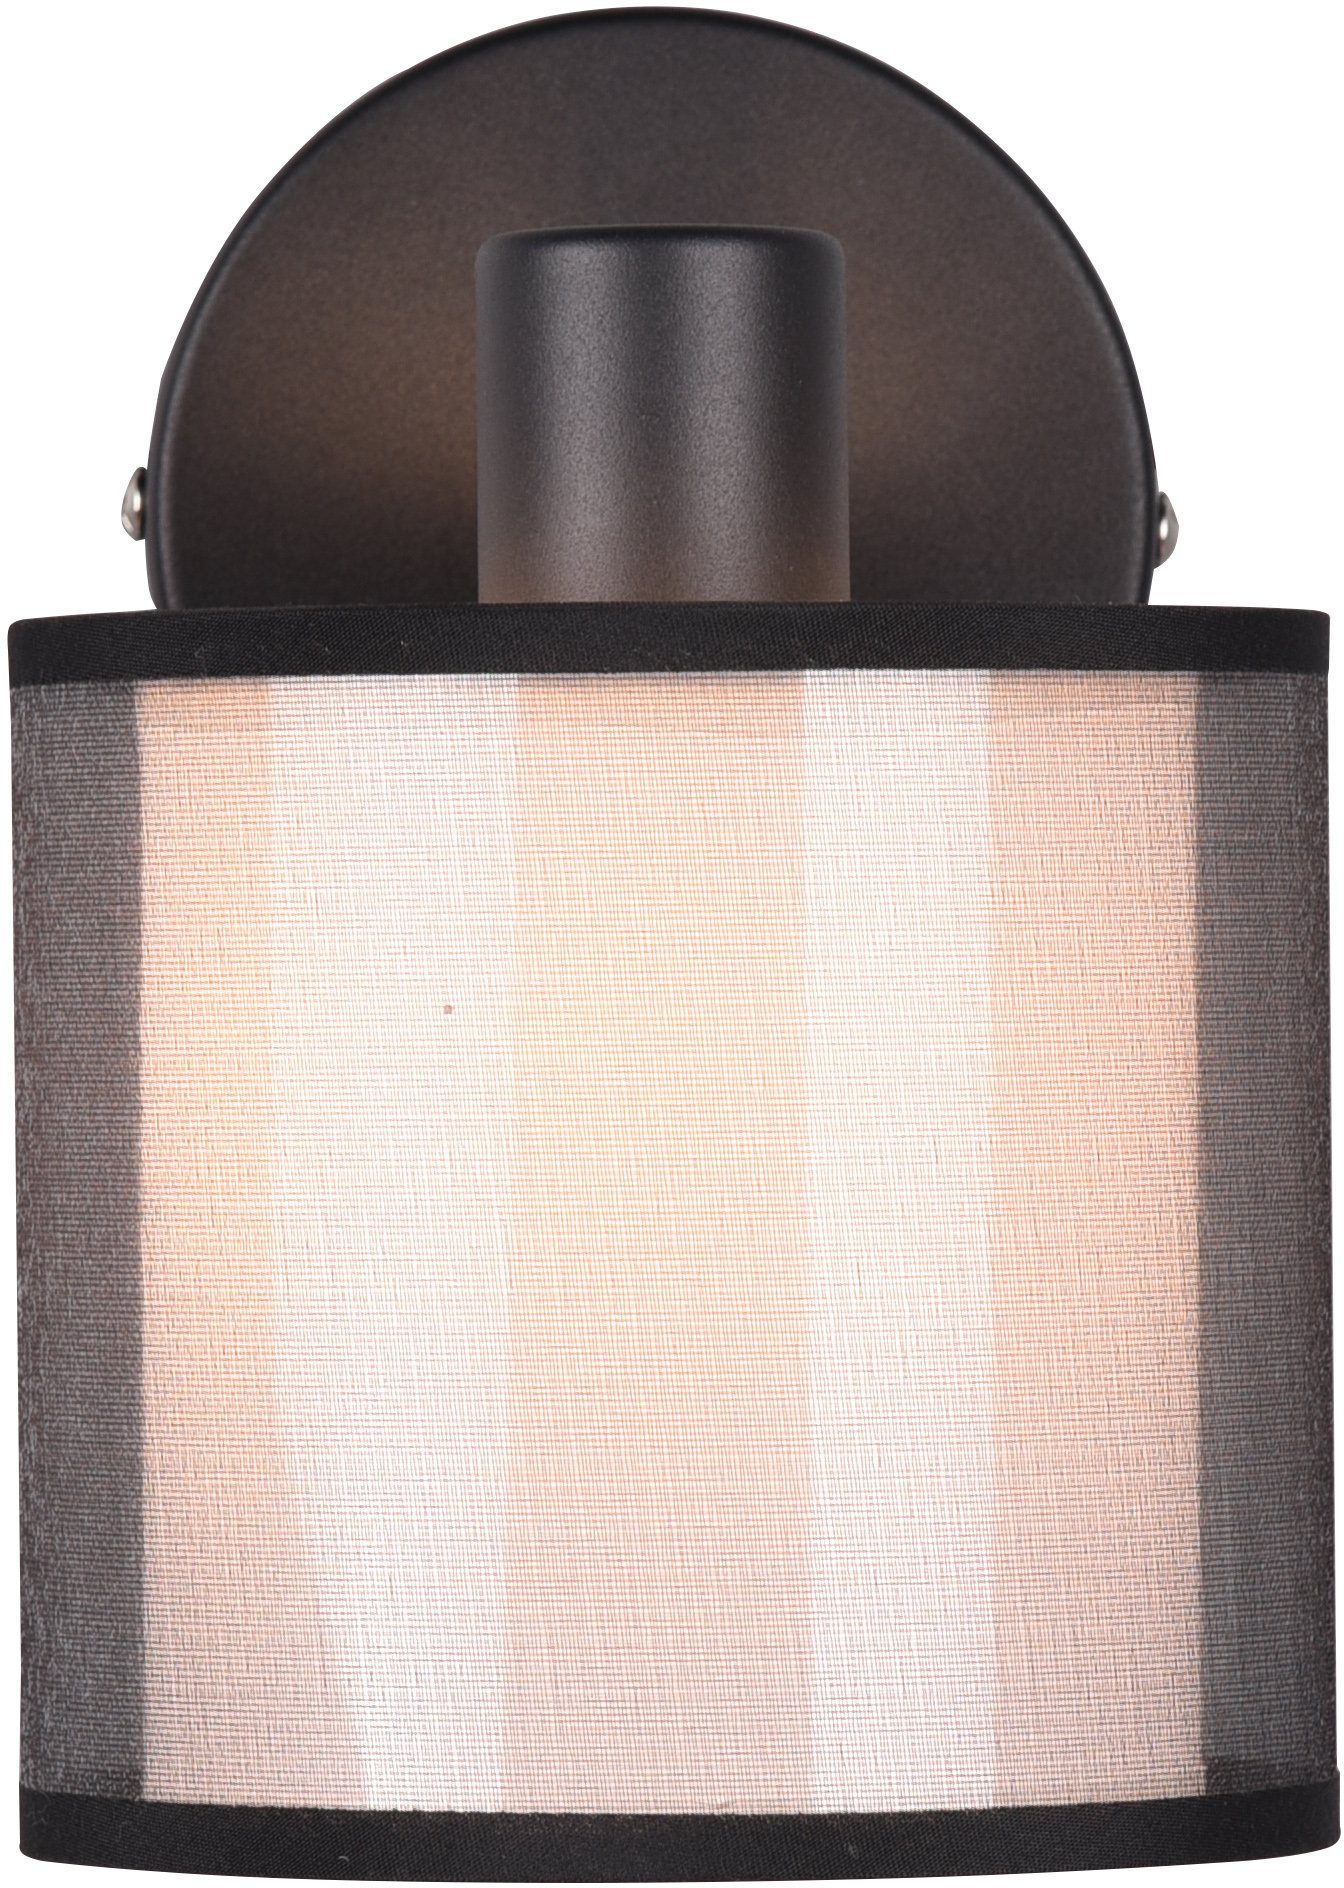 Textil, Leuchtmittel Organza-Schirm transparenter Deckenstrahler Liotta, Spot mit wechselbar, Doppelschirm of 1-flammig Style Places